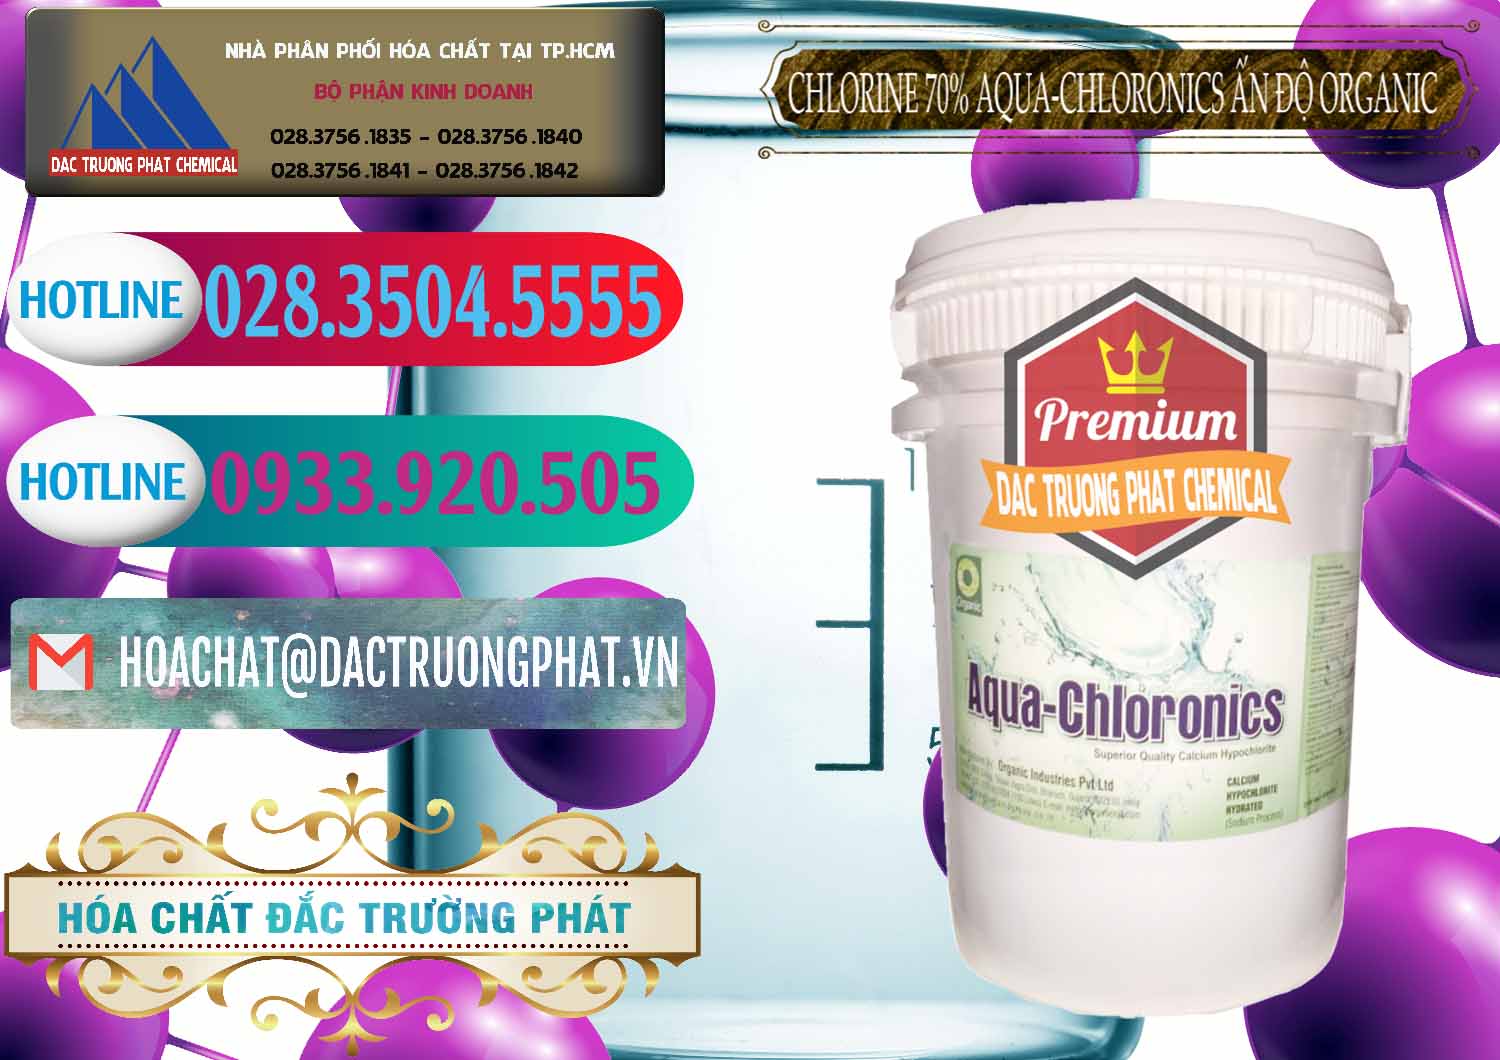 Nhà cung cấp ( bán ) Chlorine – Clorin 70% Aqua-Chloronics Ấn Độ Organic India - 0211 - Cty phân phối ( bán ) hóa chất tại TP.HCM - truongphat.vn